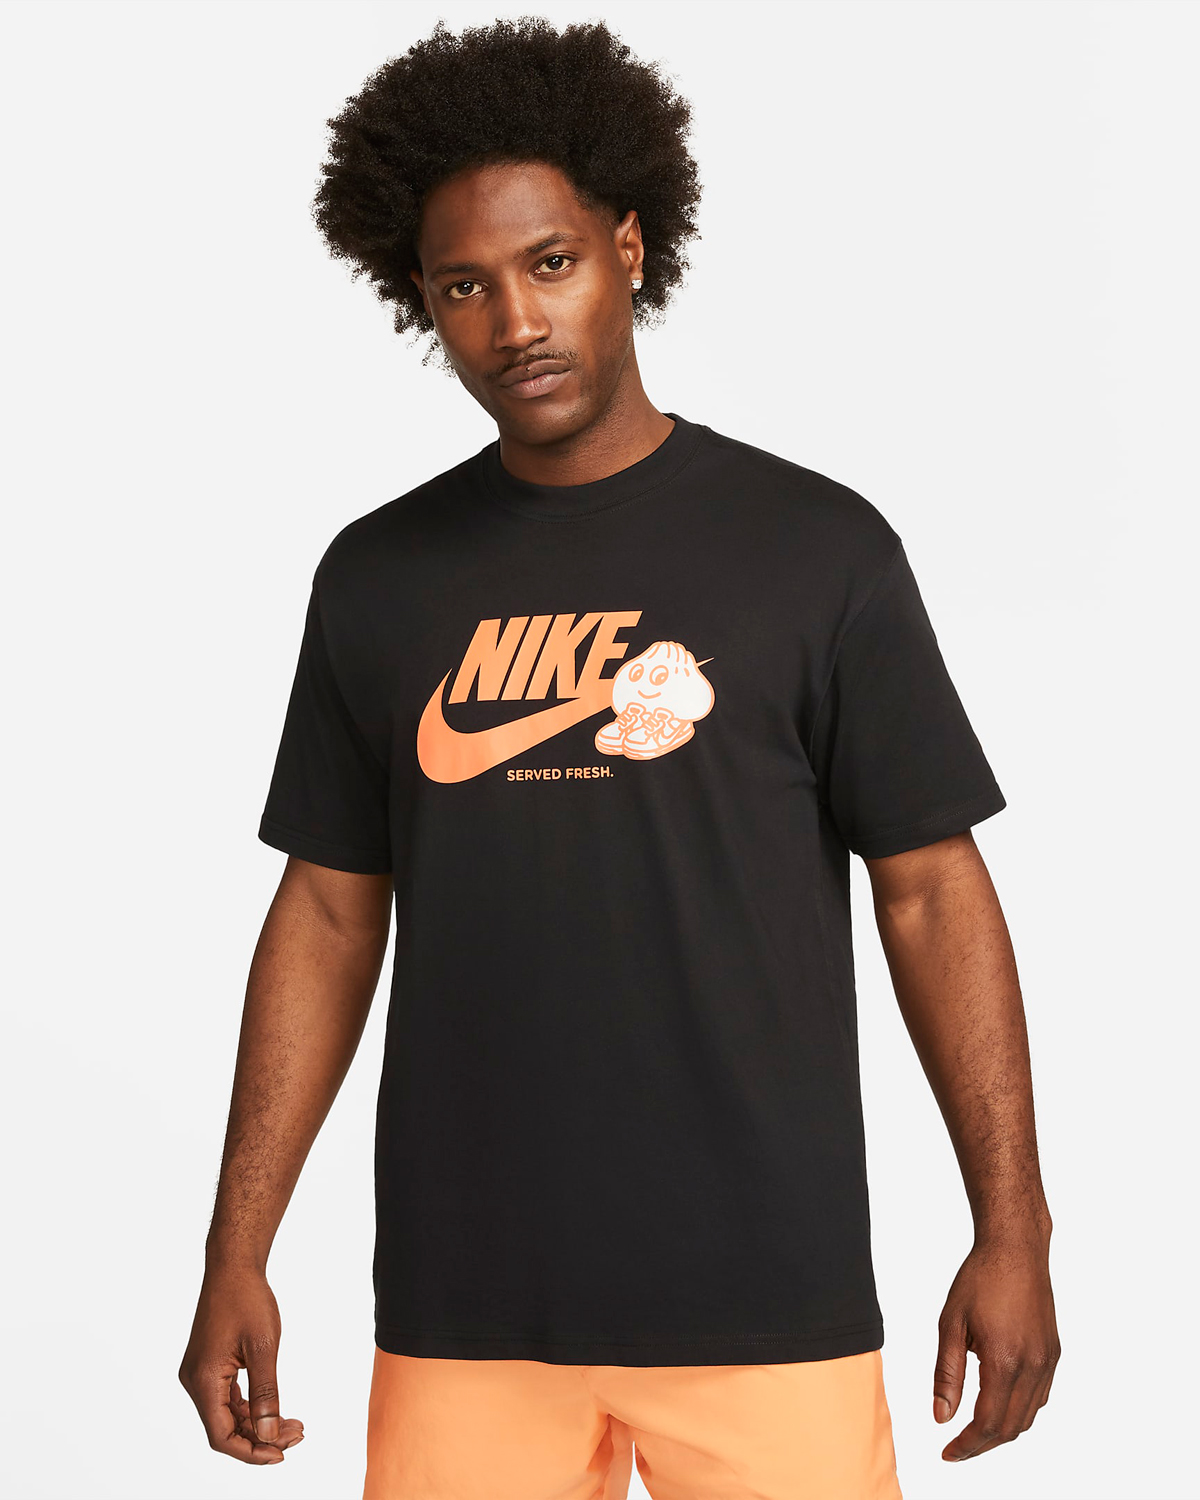 Nike-Sportswear-Sole-Food-T-Shirt-Black